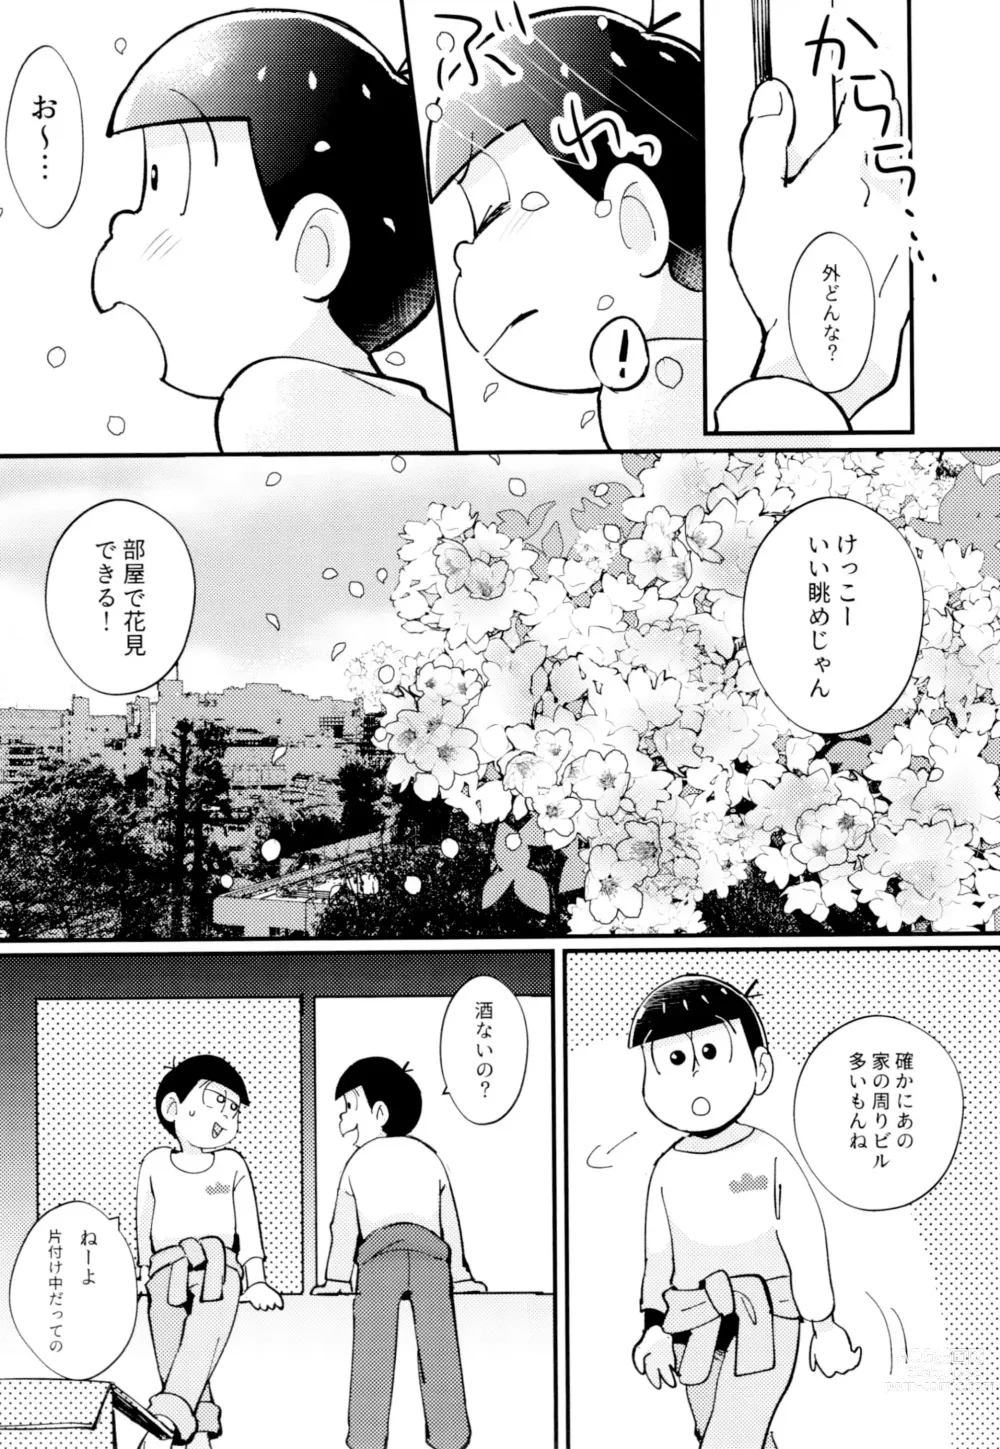 Page 9 of doujinshi 2-haku 3-kka, Kimi to Sakurasaku Apart de